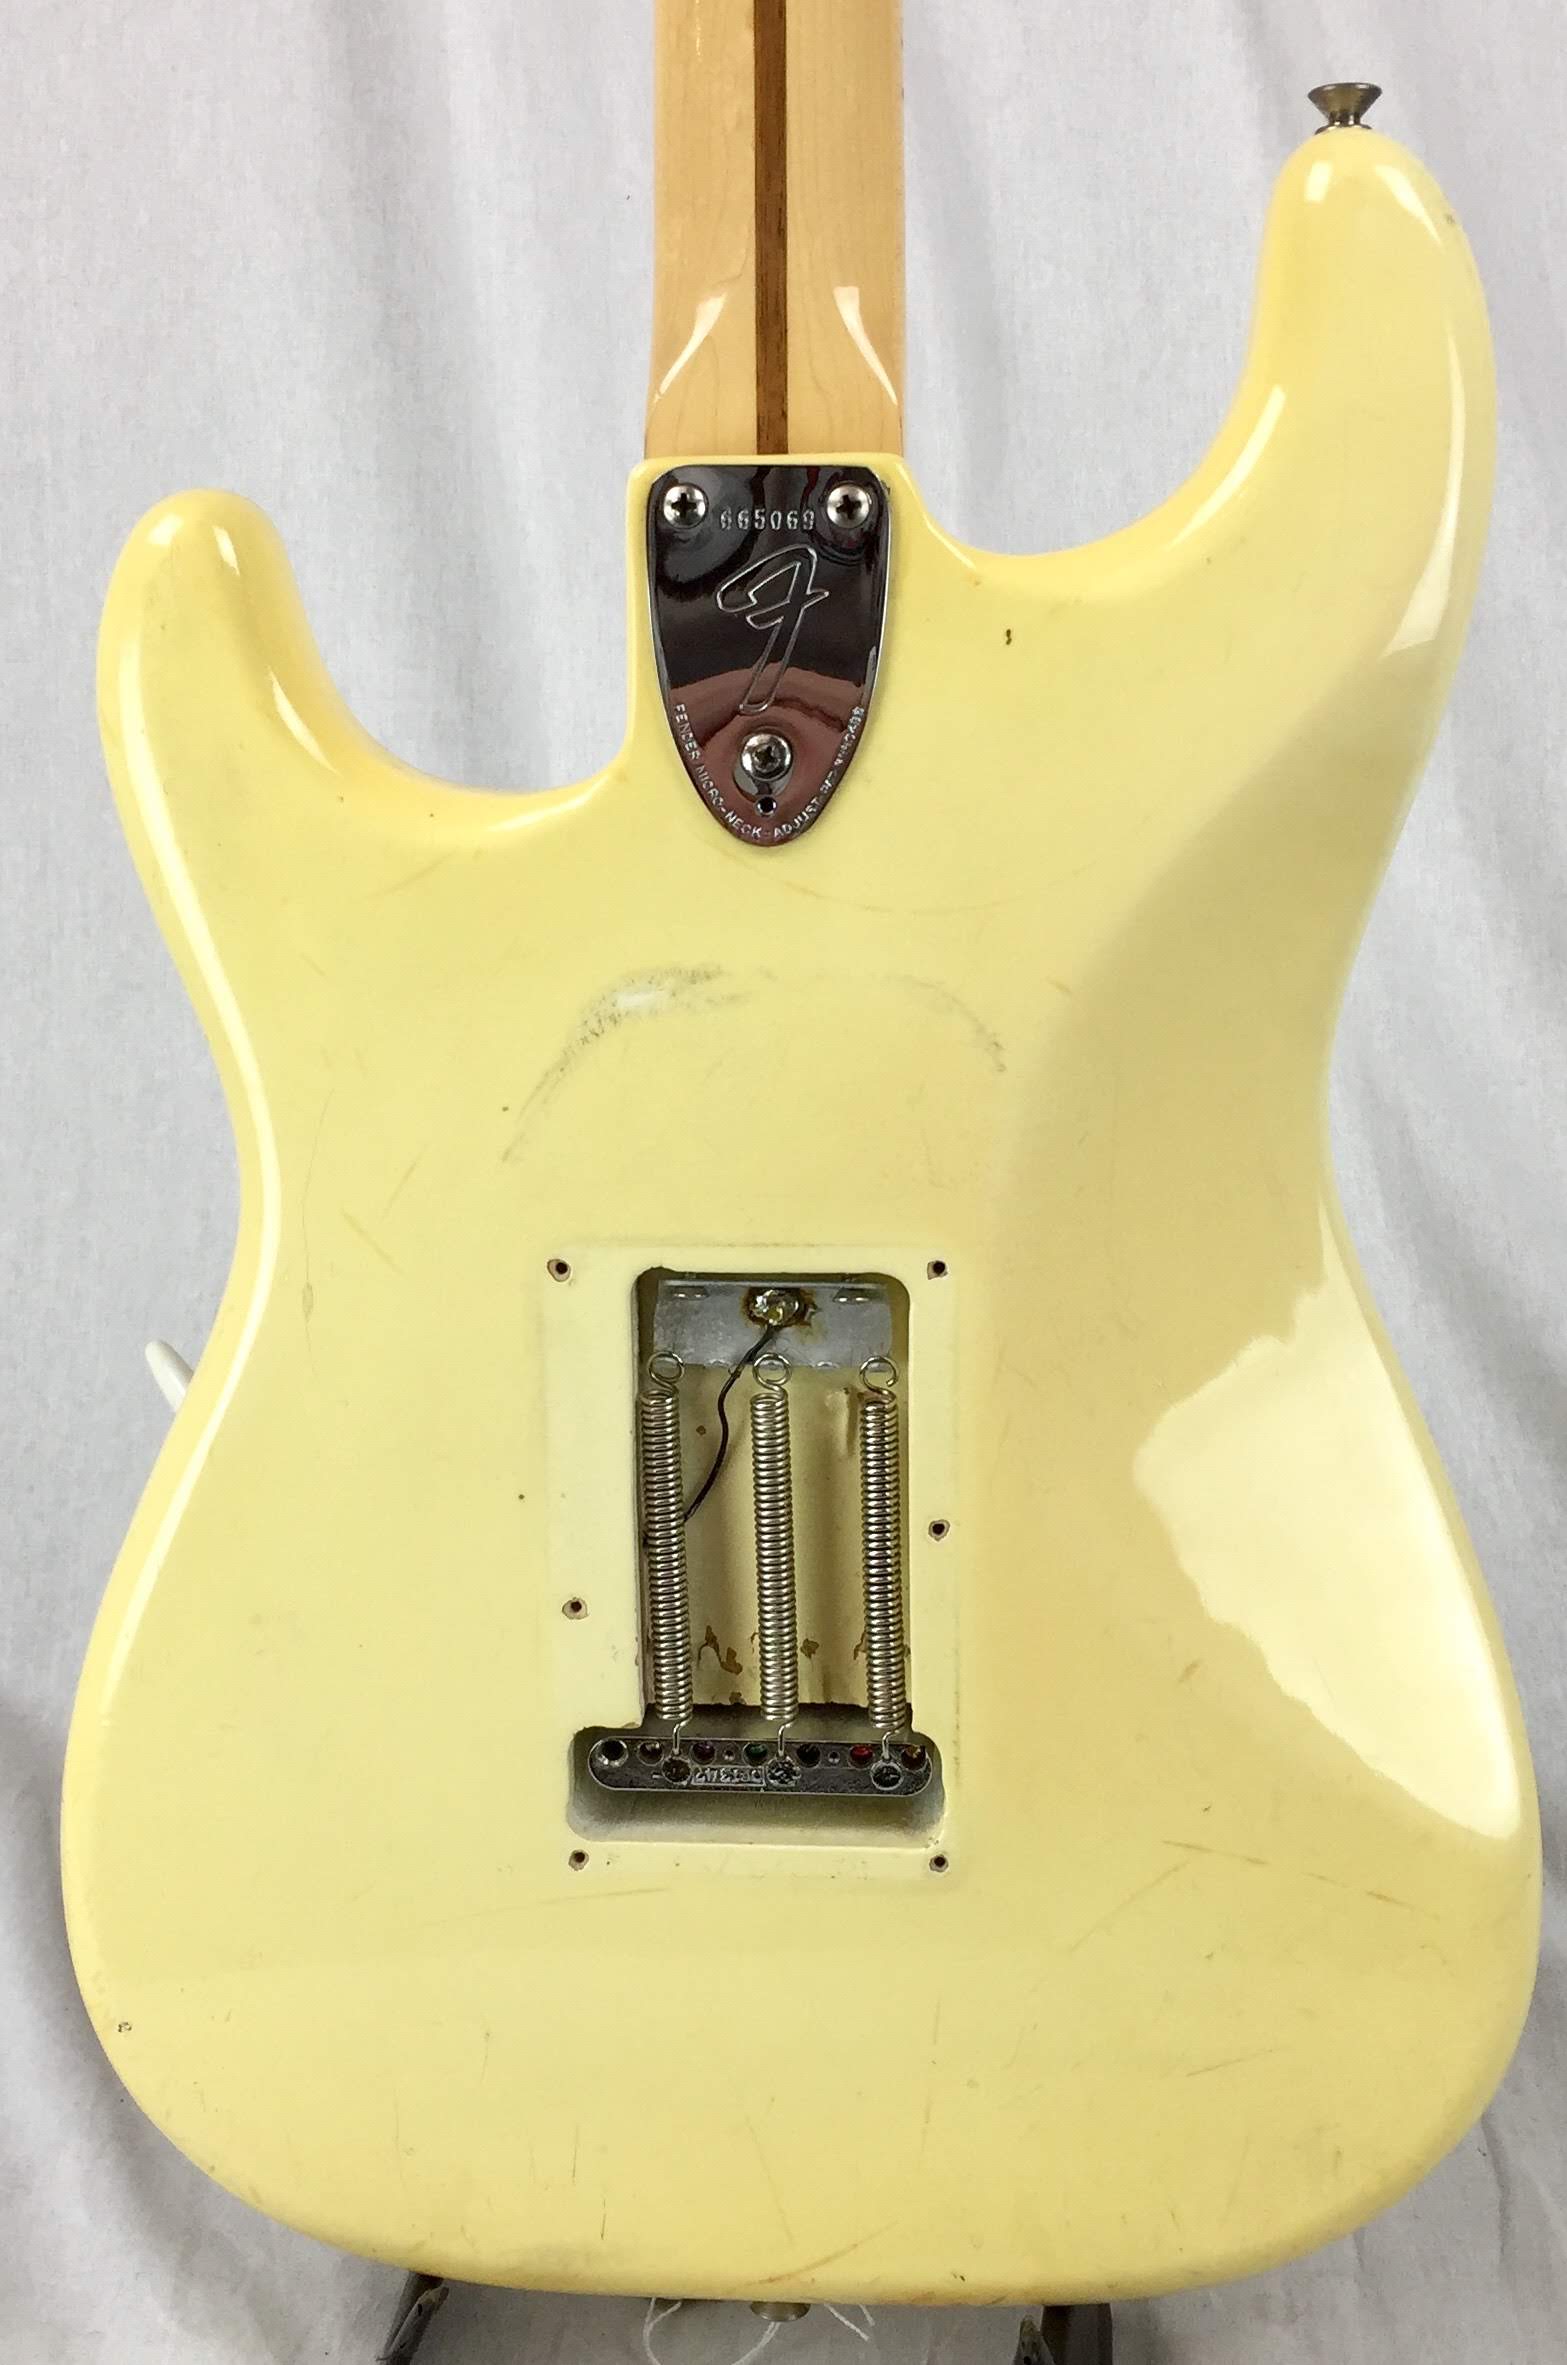 Vintage Guitars, SWEDEN - 1975 Fender Stratocaster.